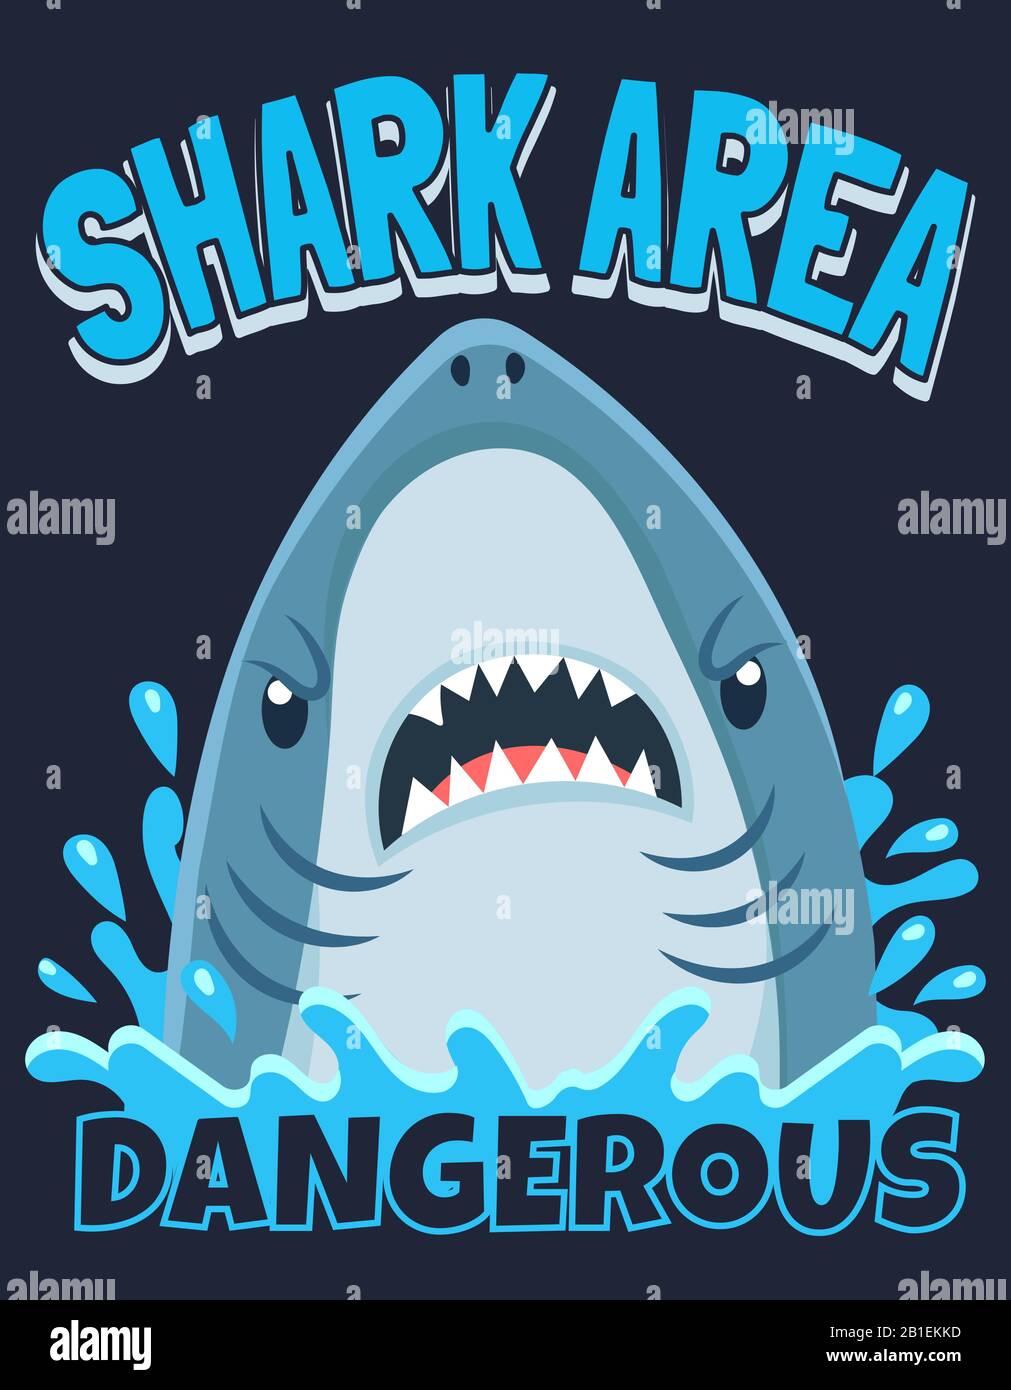 Shark area poster. Attack sharks, ocean diving and sea surf warning cartoon vector illustration Stock Vector